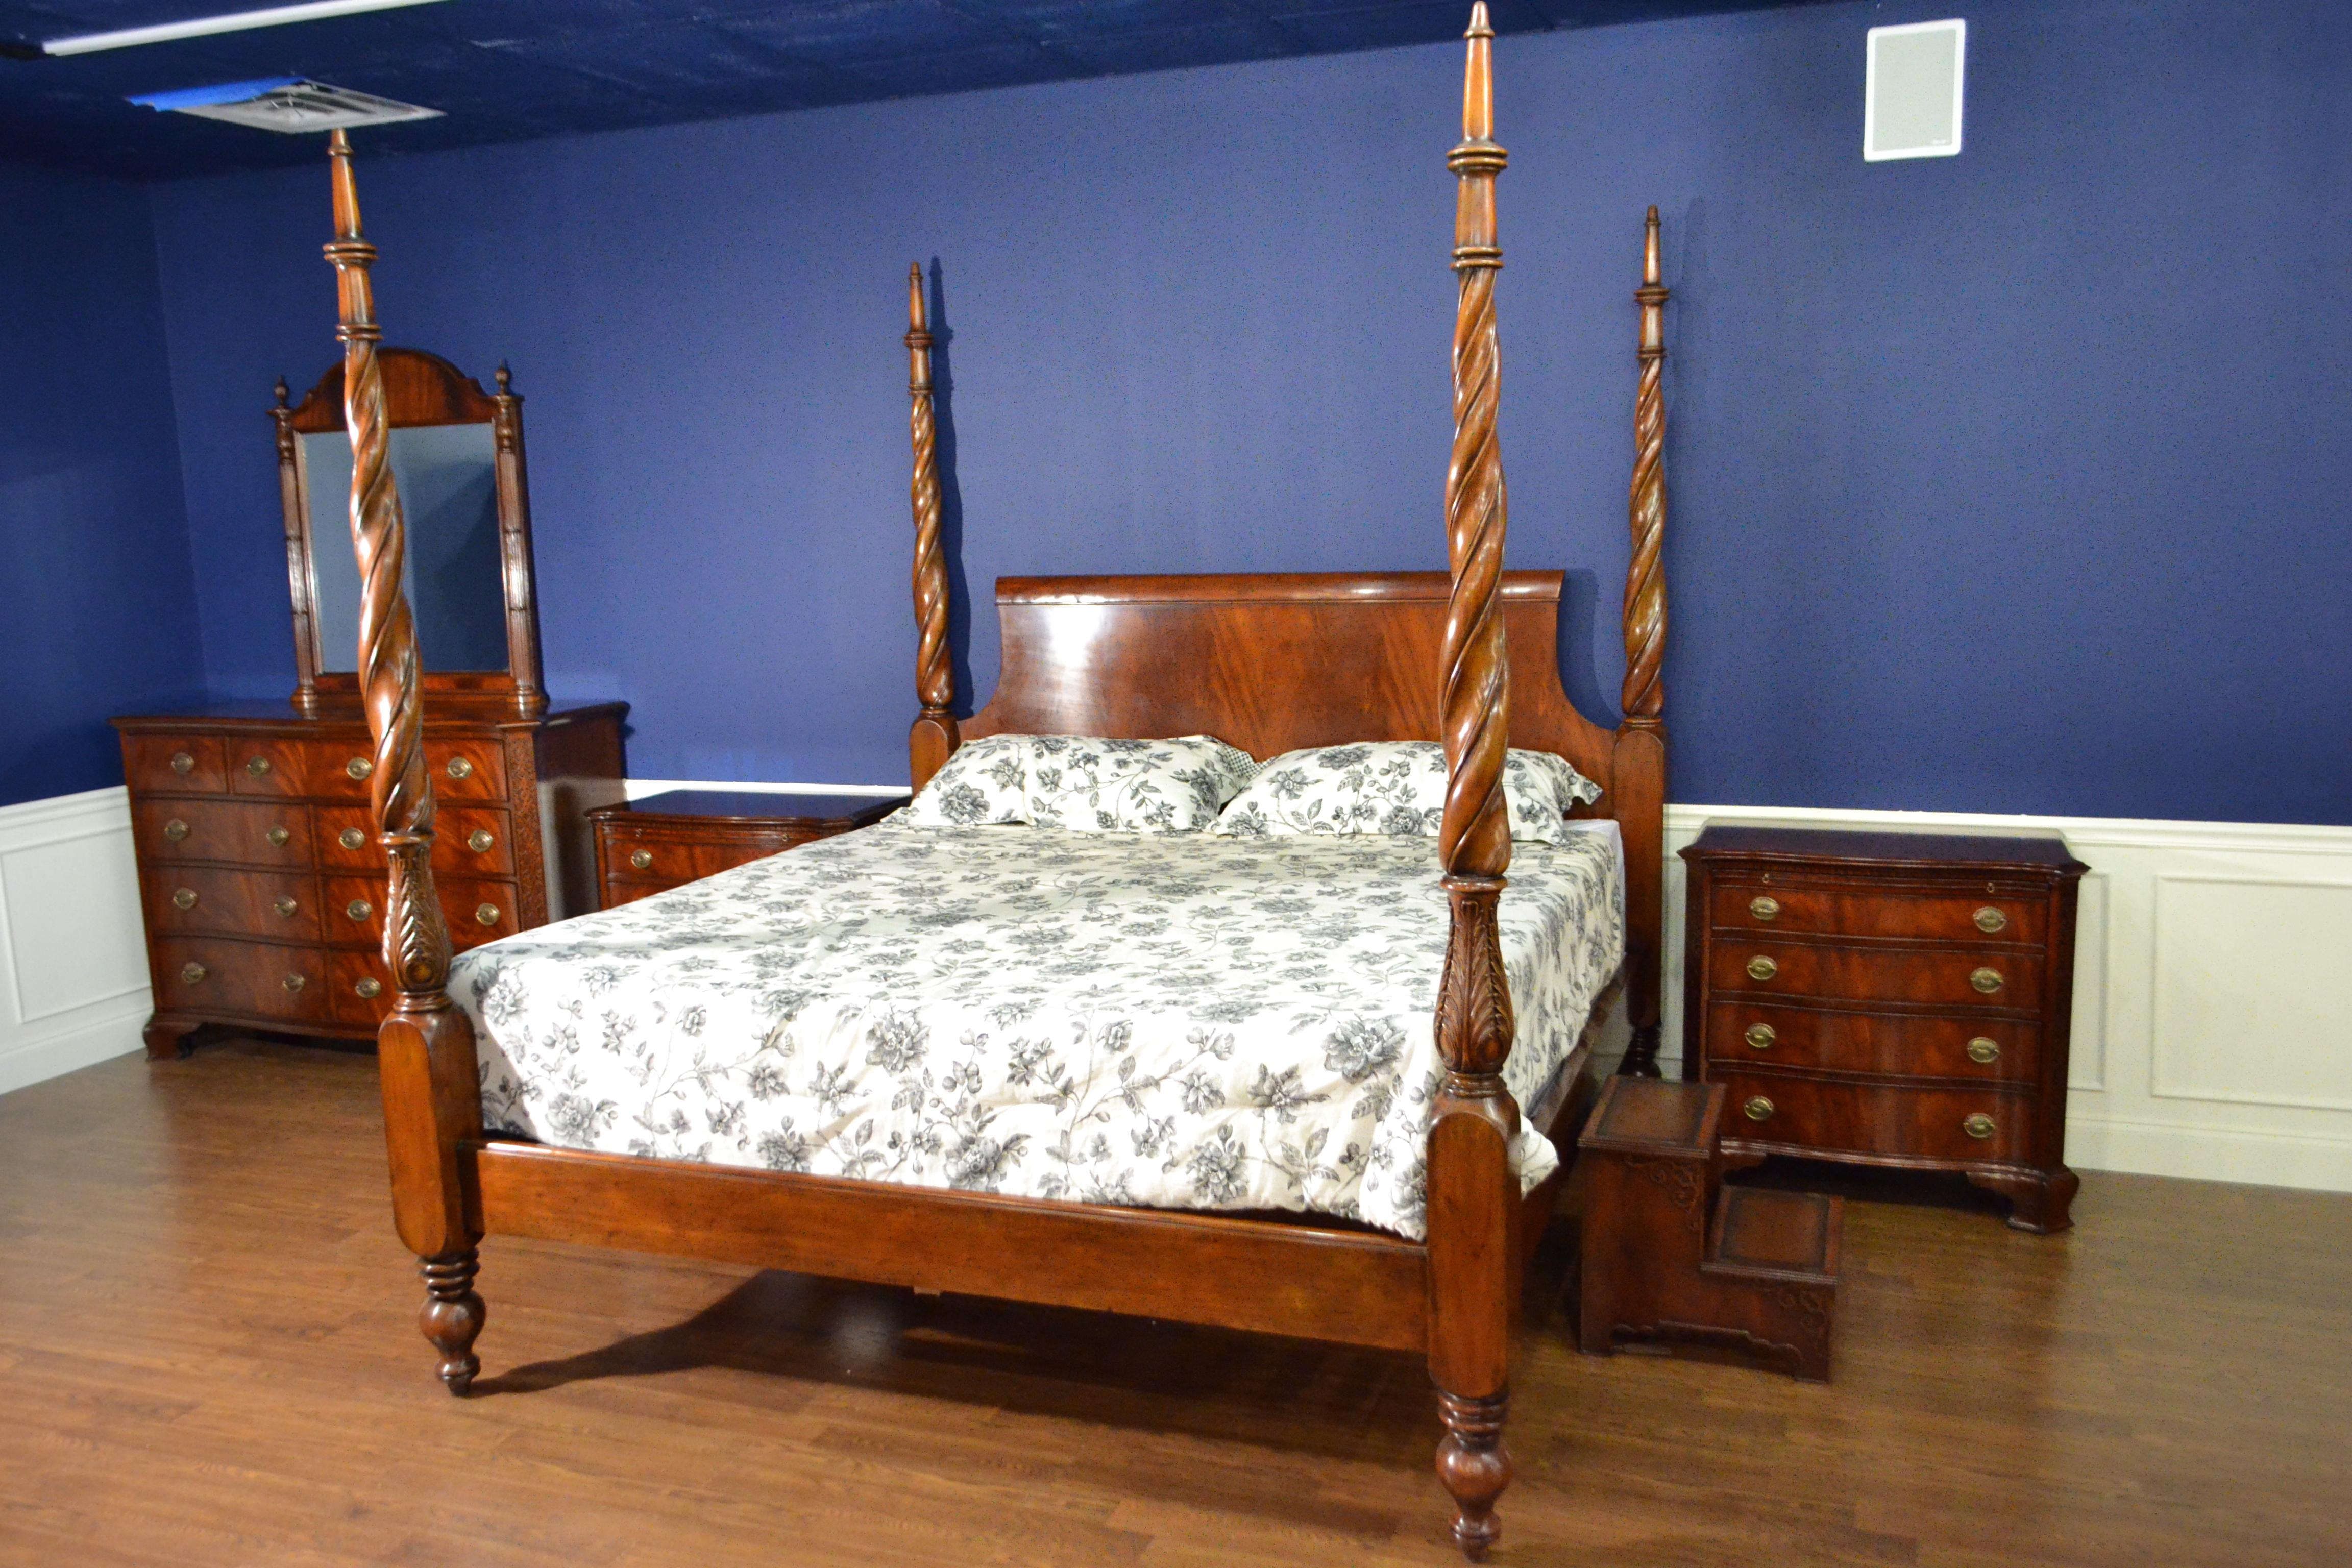 Il s'agit d'un nouveau lit à baldaquin traditionnel en acajou Plantation de Leighton Hall Furniture. Son design s'inspire des lits à baldaquin de la période Regency et comporte des montants sculptés à la main et une tête de lit en